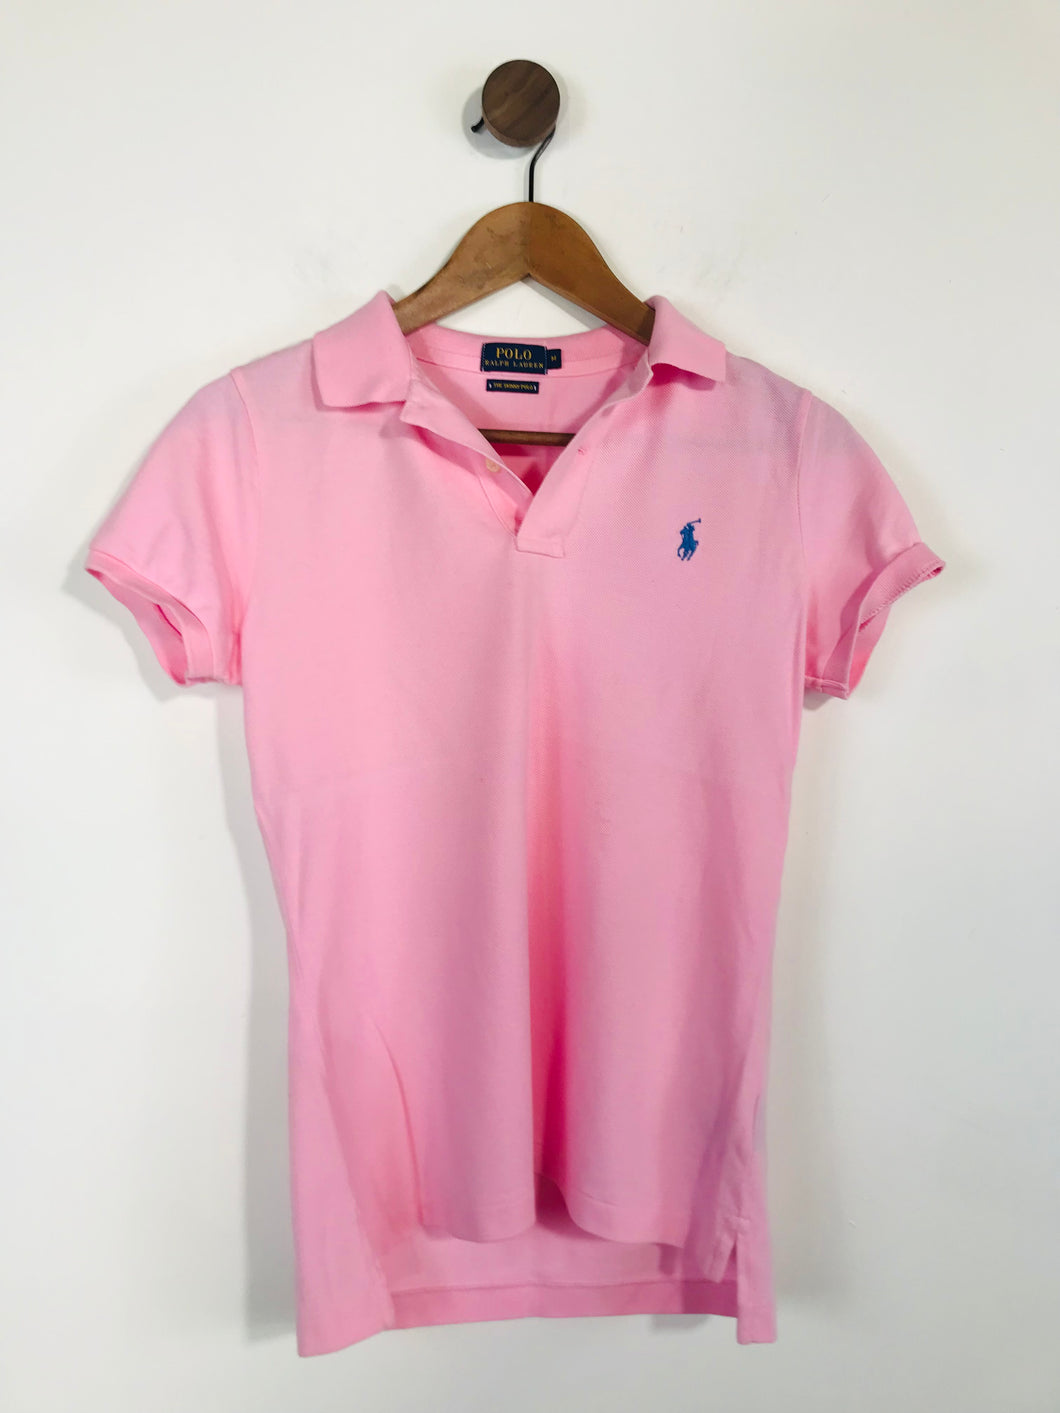 Ralph Lauren Women's Short Sleeve Polo Shirt | M UK10-12 | Pink